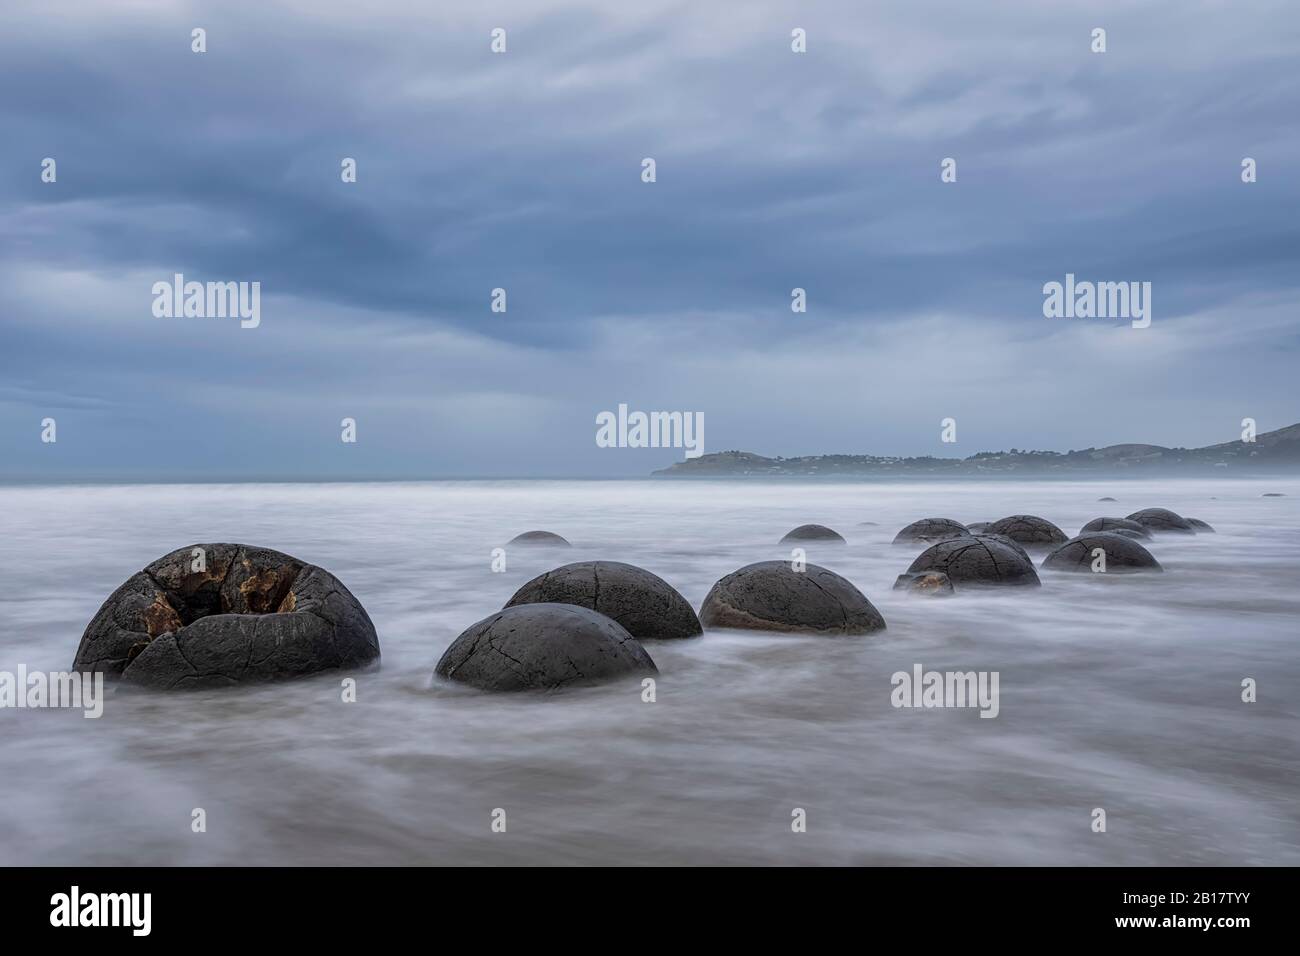 New Zealand, Oceania, South Island, Southland, Hampden, Otago, Moeraki, Koekohe Beach, Moeraki Boulders Beach, Moeraki Boulders, Round stones on beach at dusk Stock Photo